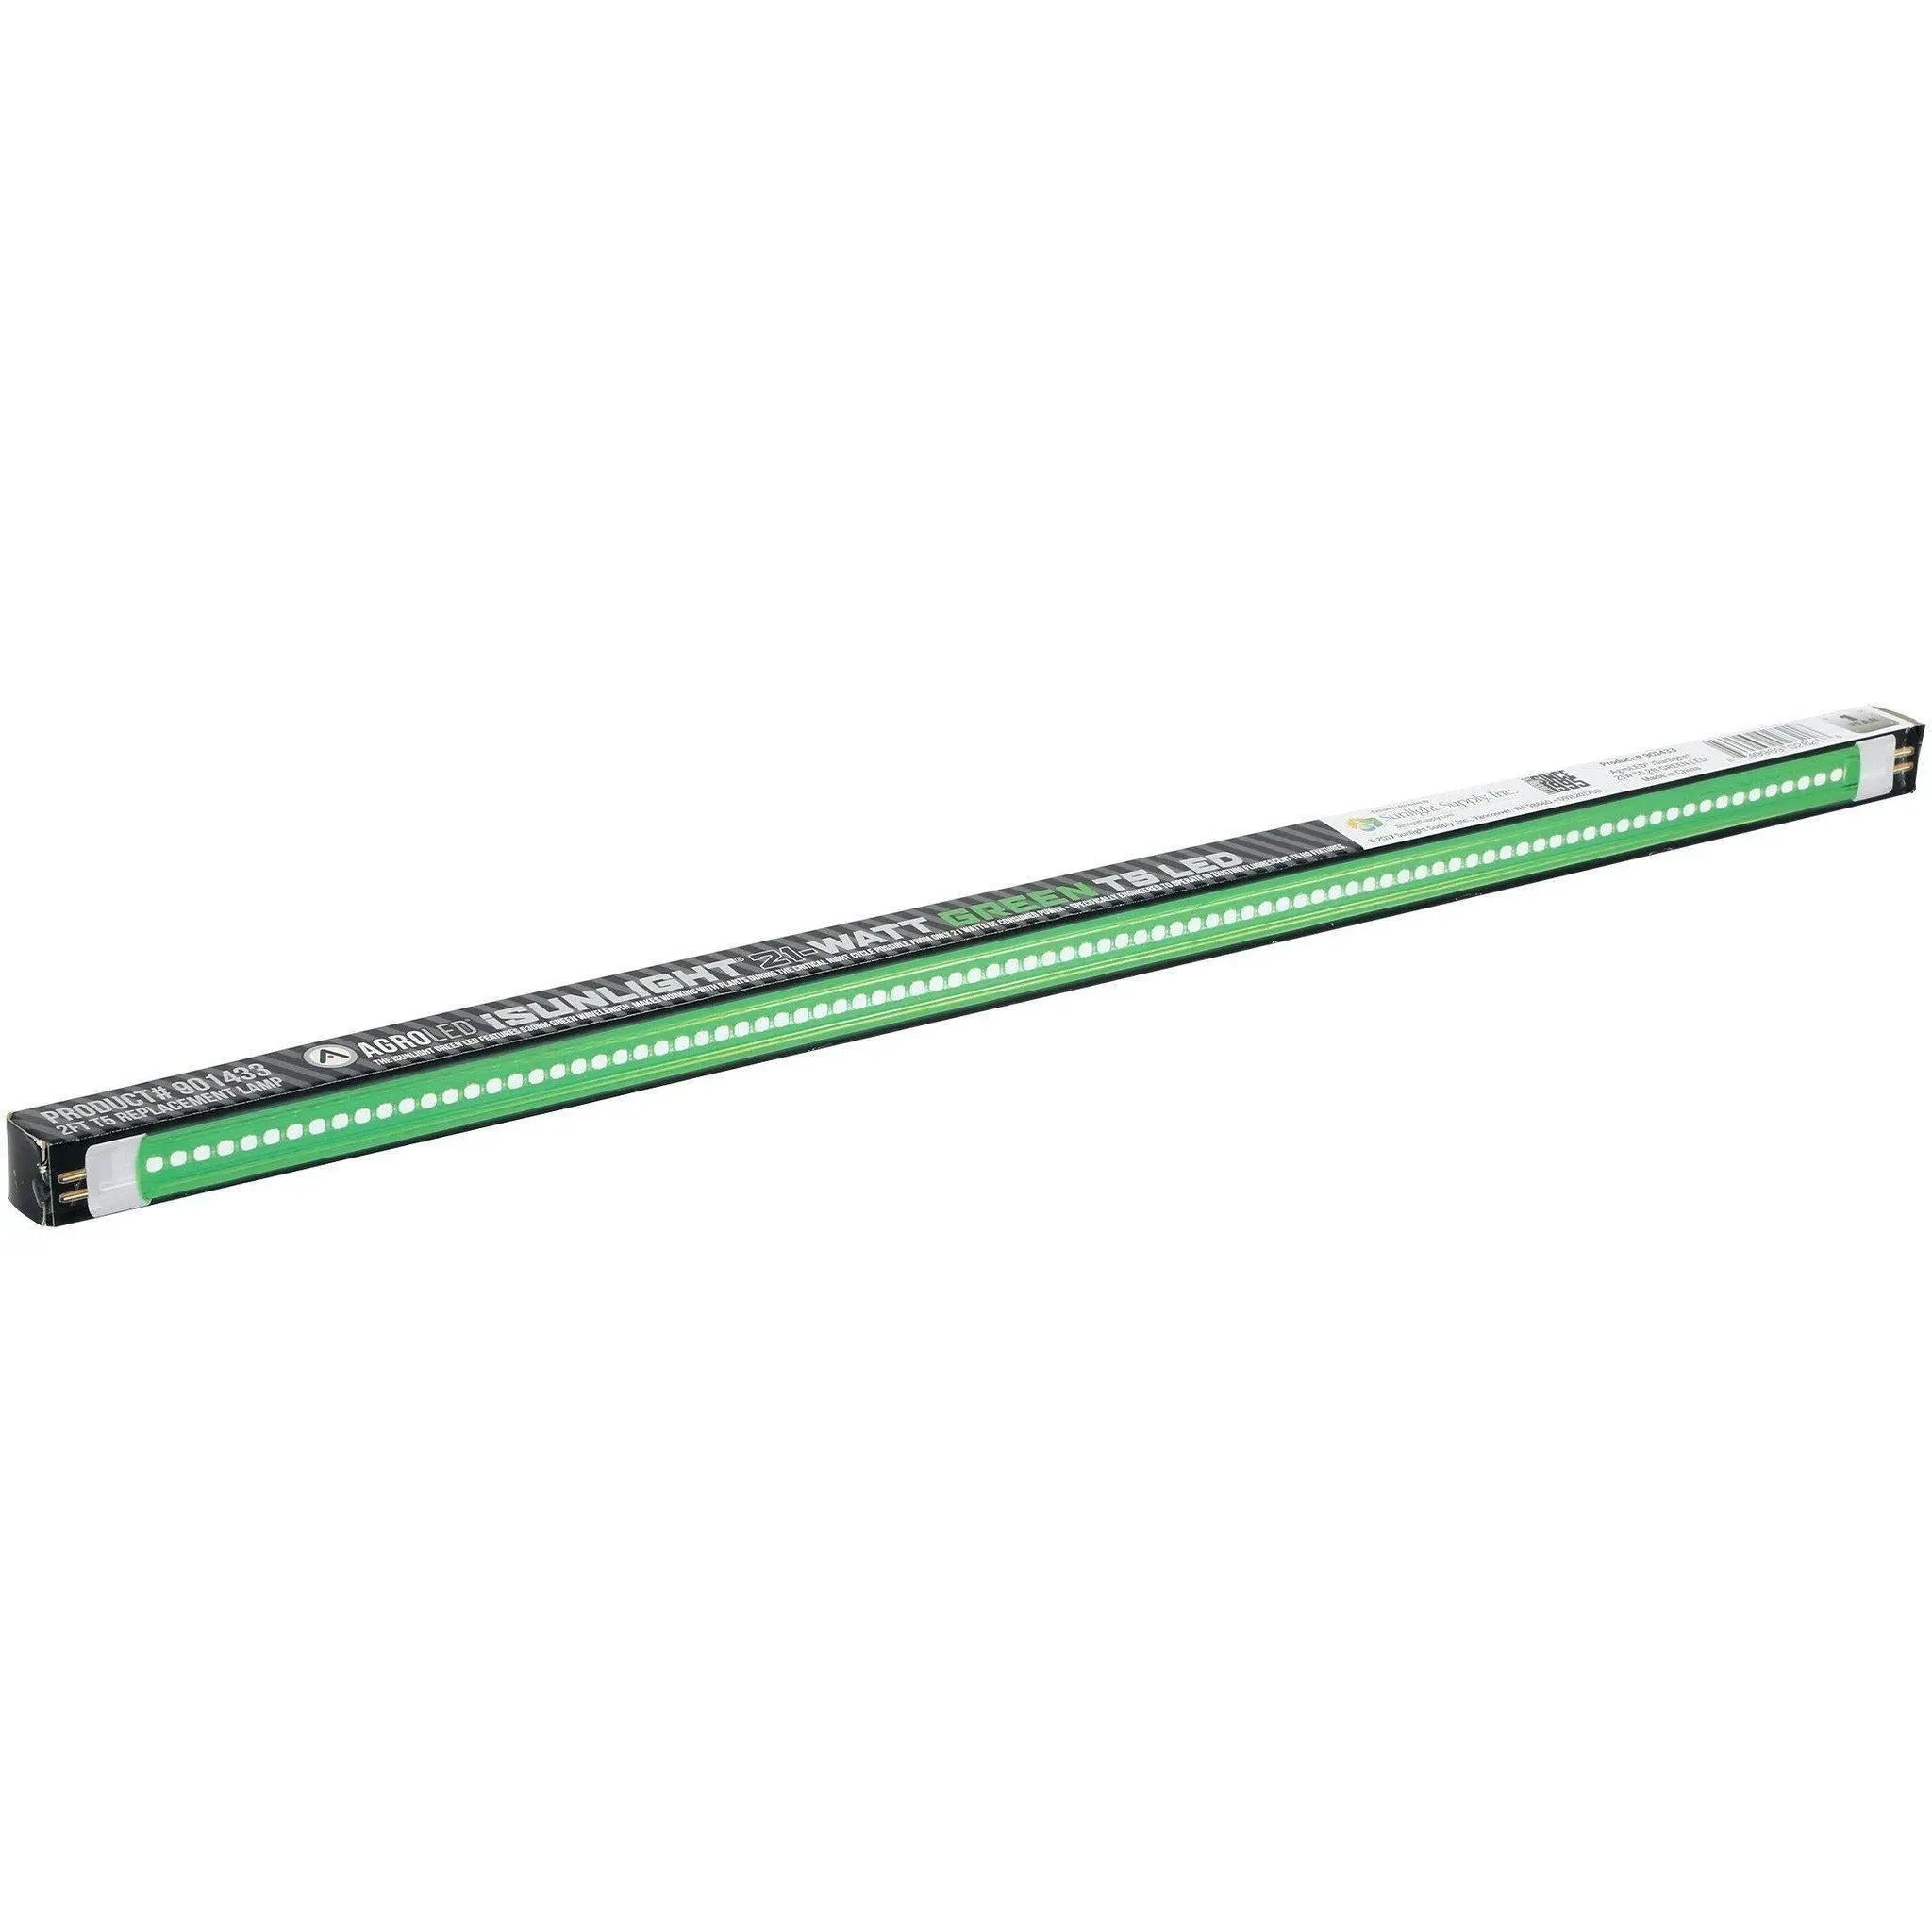 AgroLED iSunlight® 21 Watt T5 Green LED Lamp, 2' AgroLED